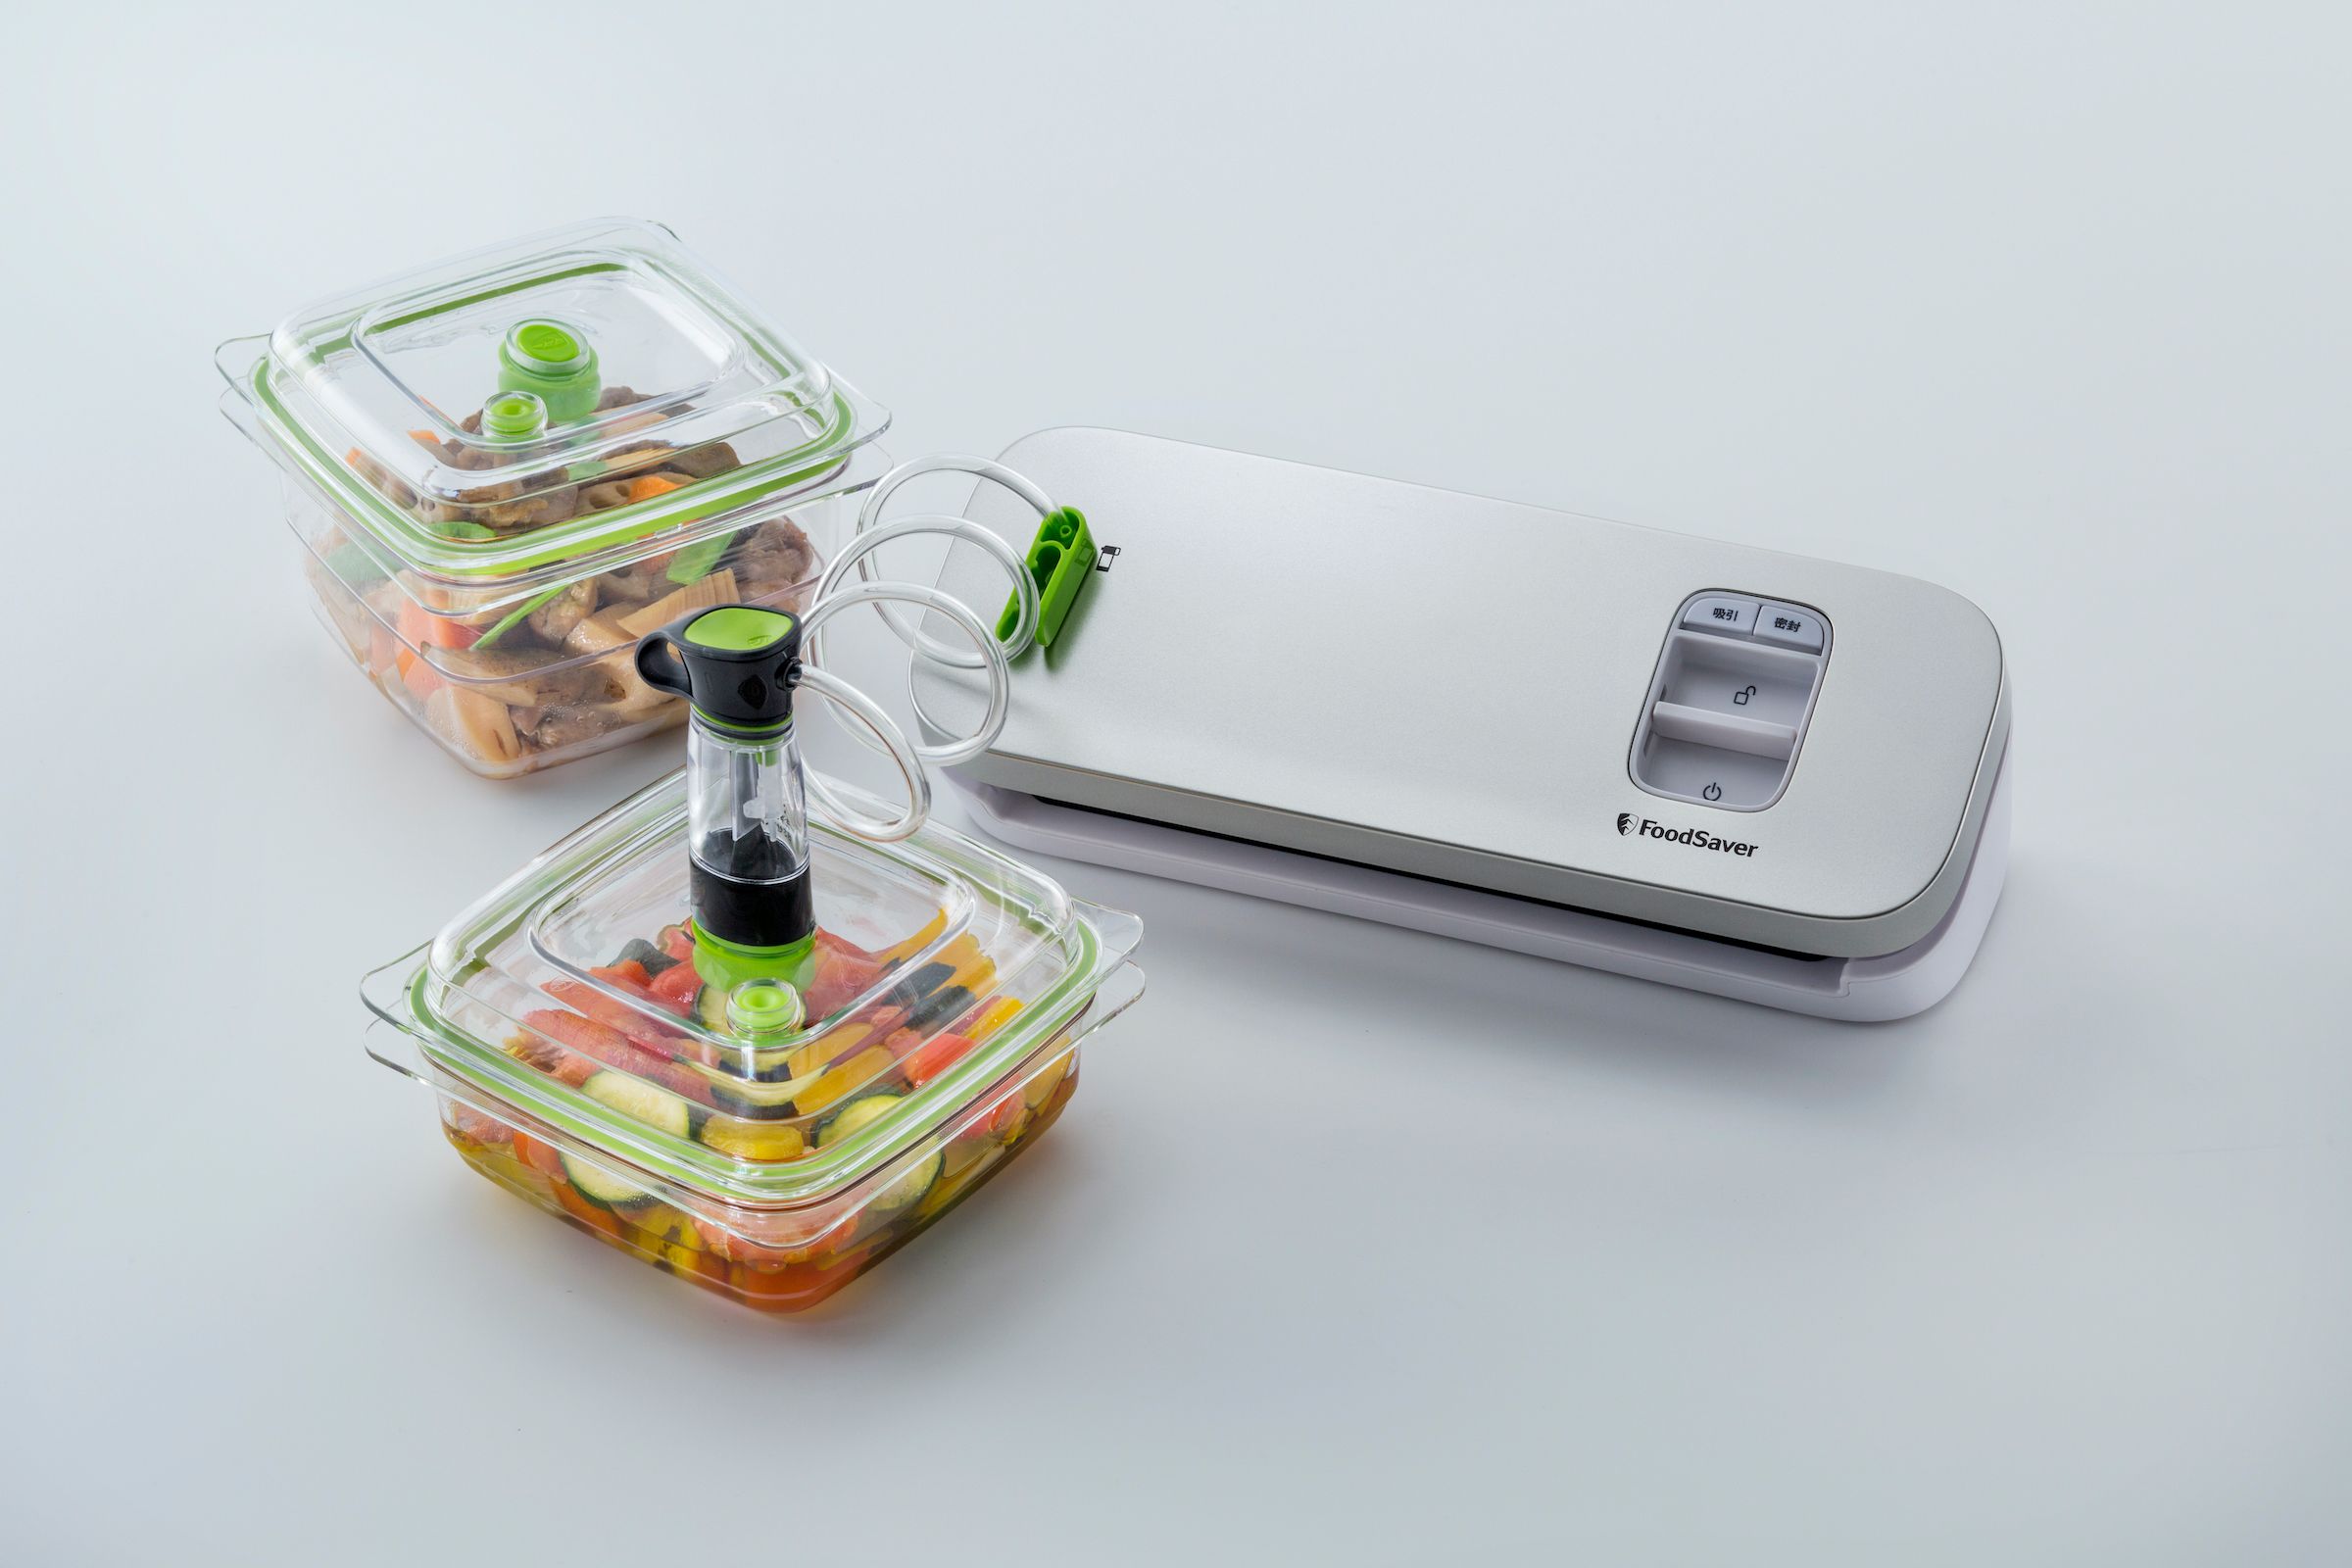 FoodSaver VS1193輕巧型真空保鮮機還可以搭配專屬密鮮盒與真空夾鏈袋使用，尤其湯品或易碎的食材，都很適合使用密鮮盒作真空保存。